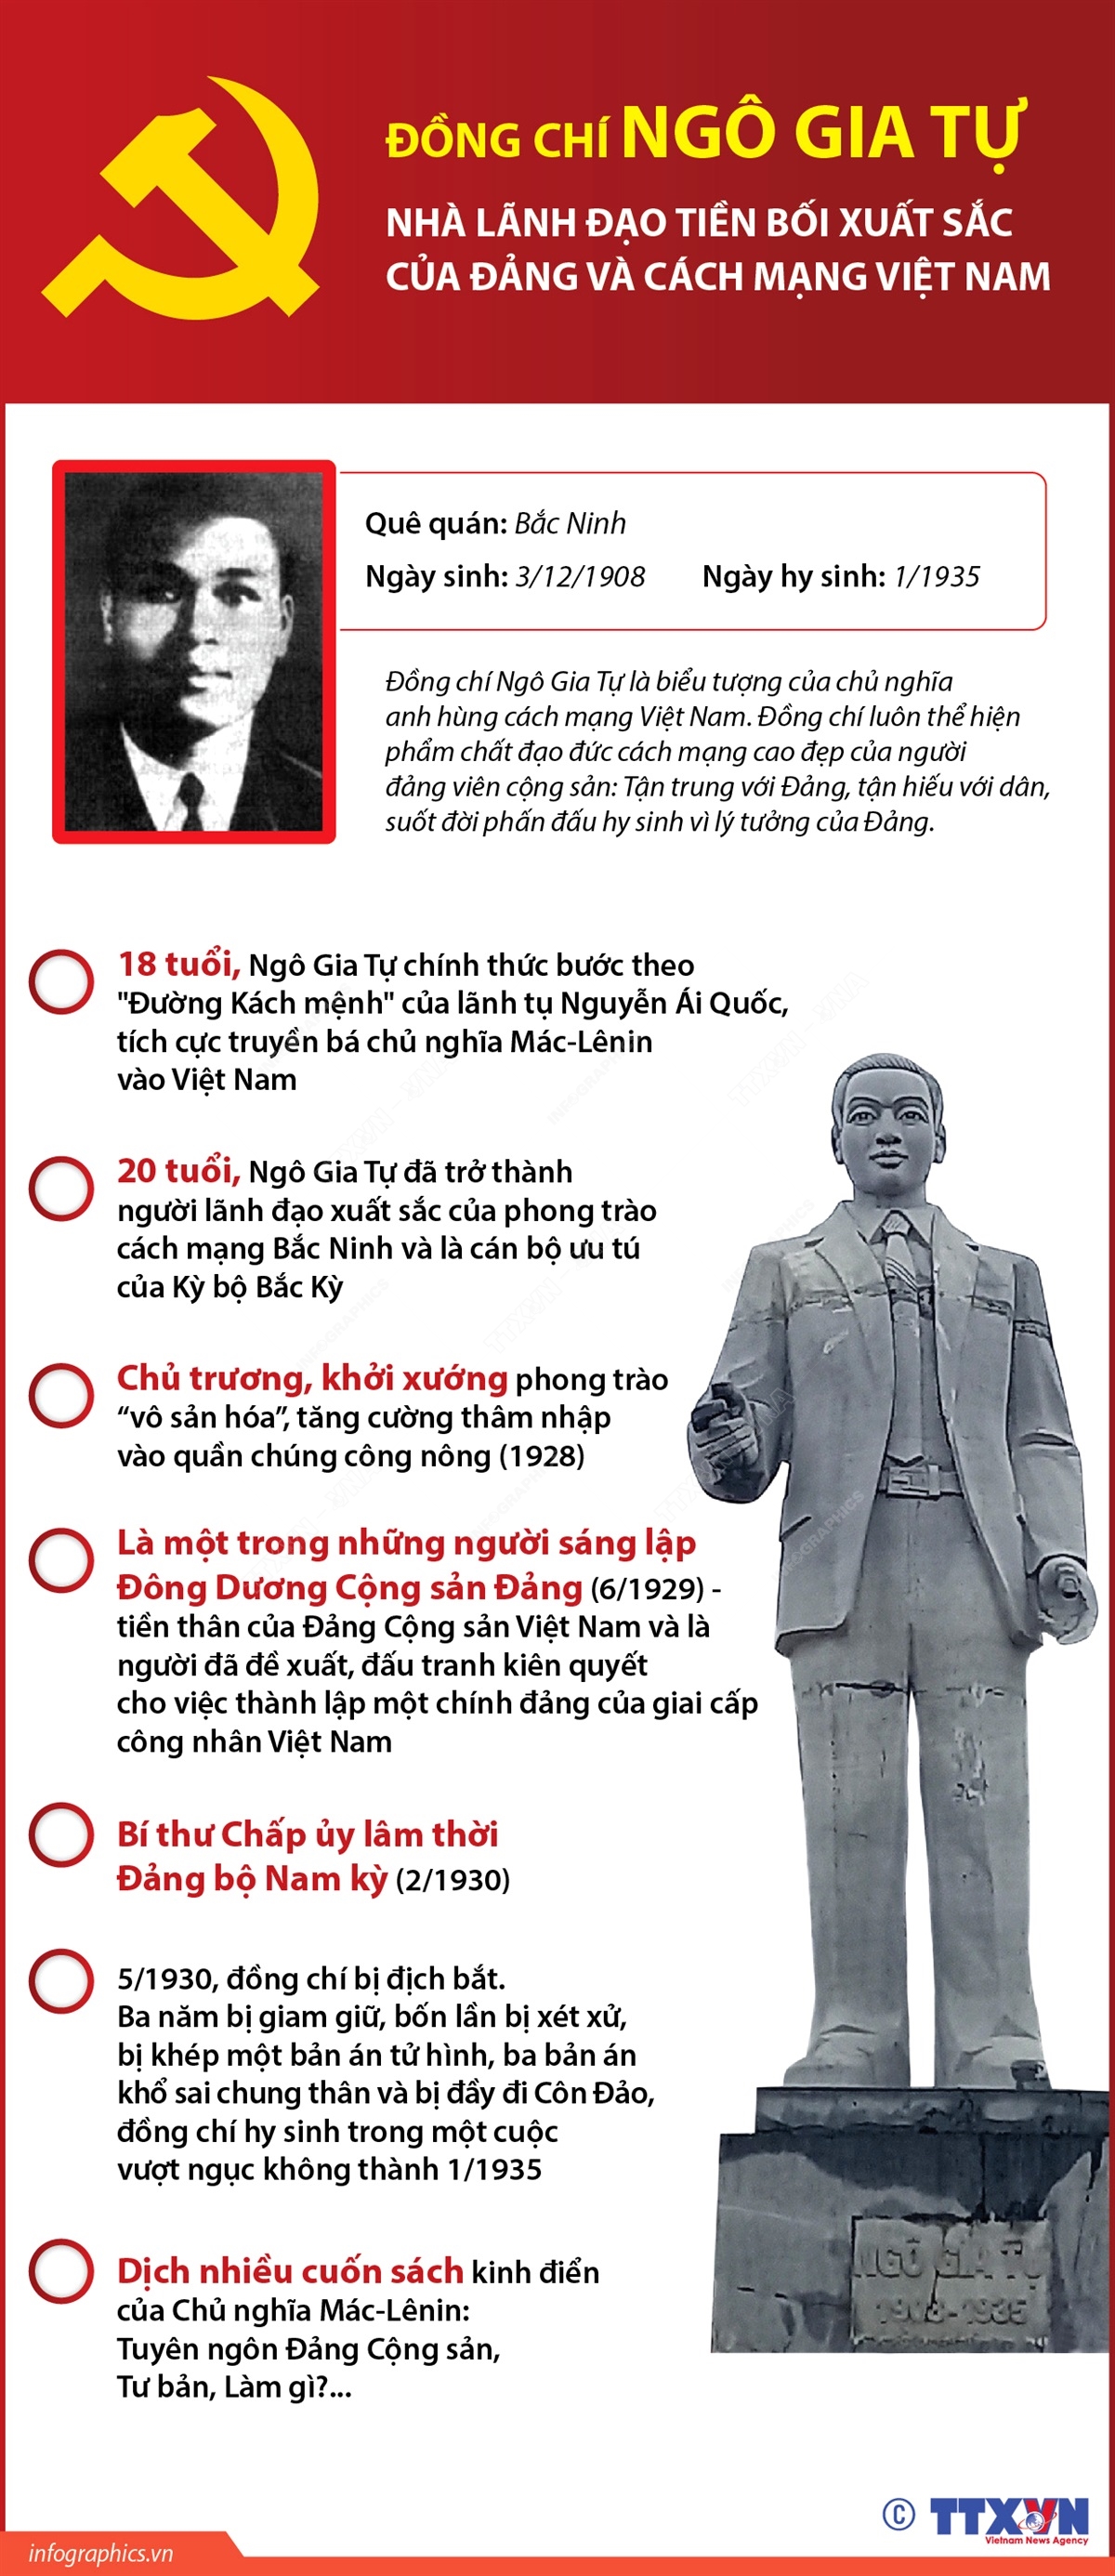 Đồng chí Ngô Gia Tự - Nhà lãnh đạo tiền bối xuất sắc của Đảng và cách mạng Việt Nam